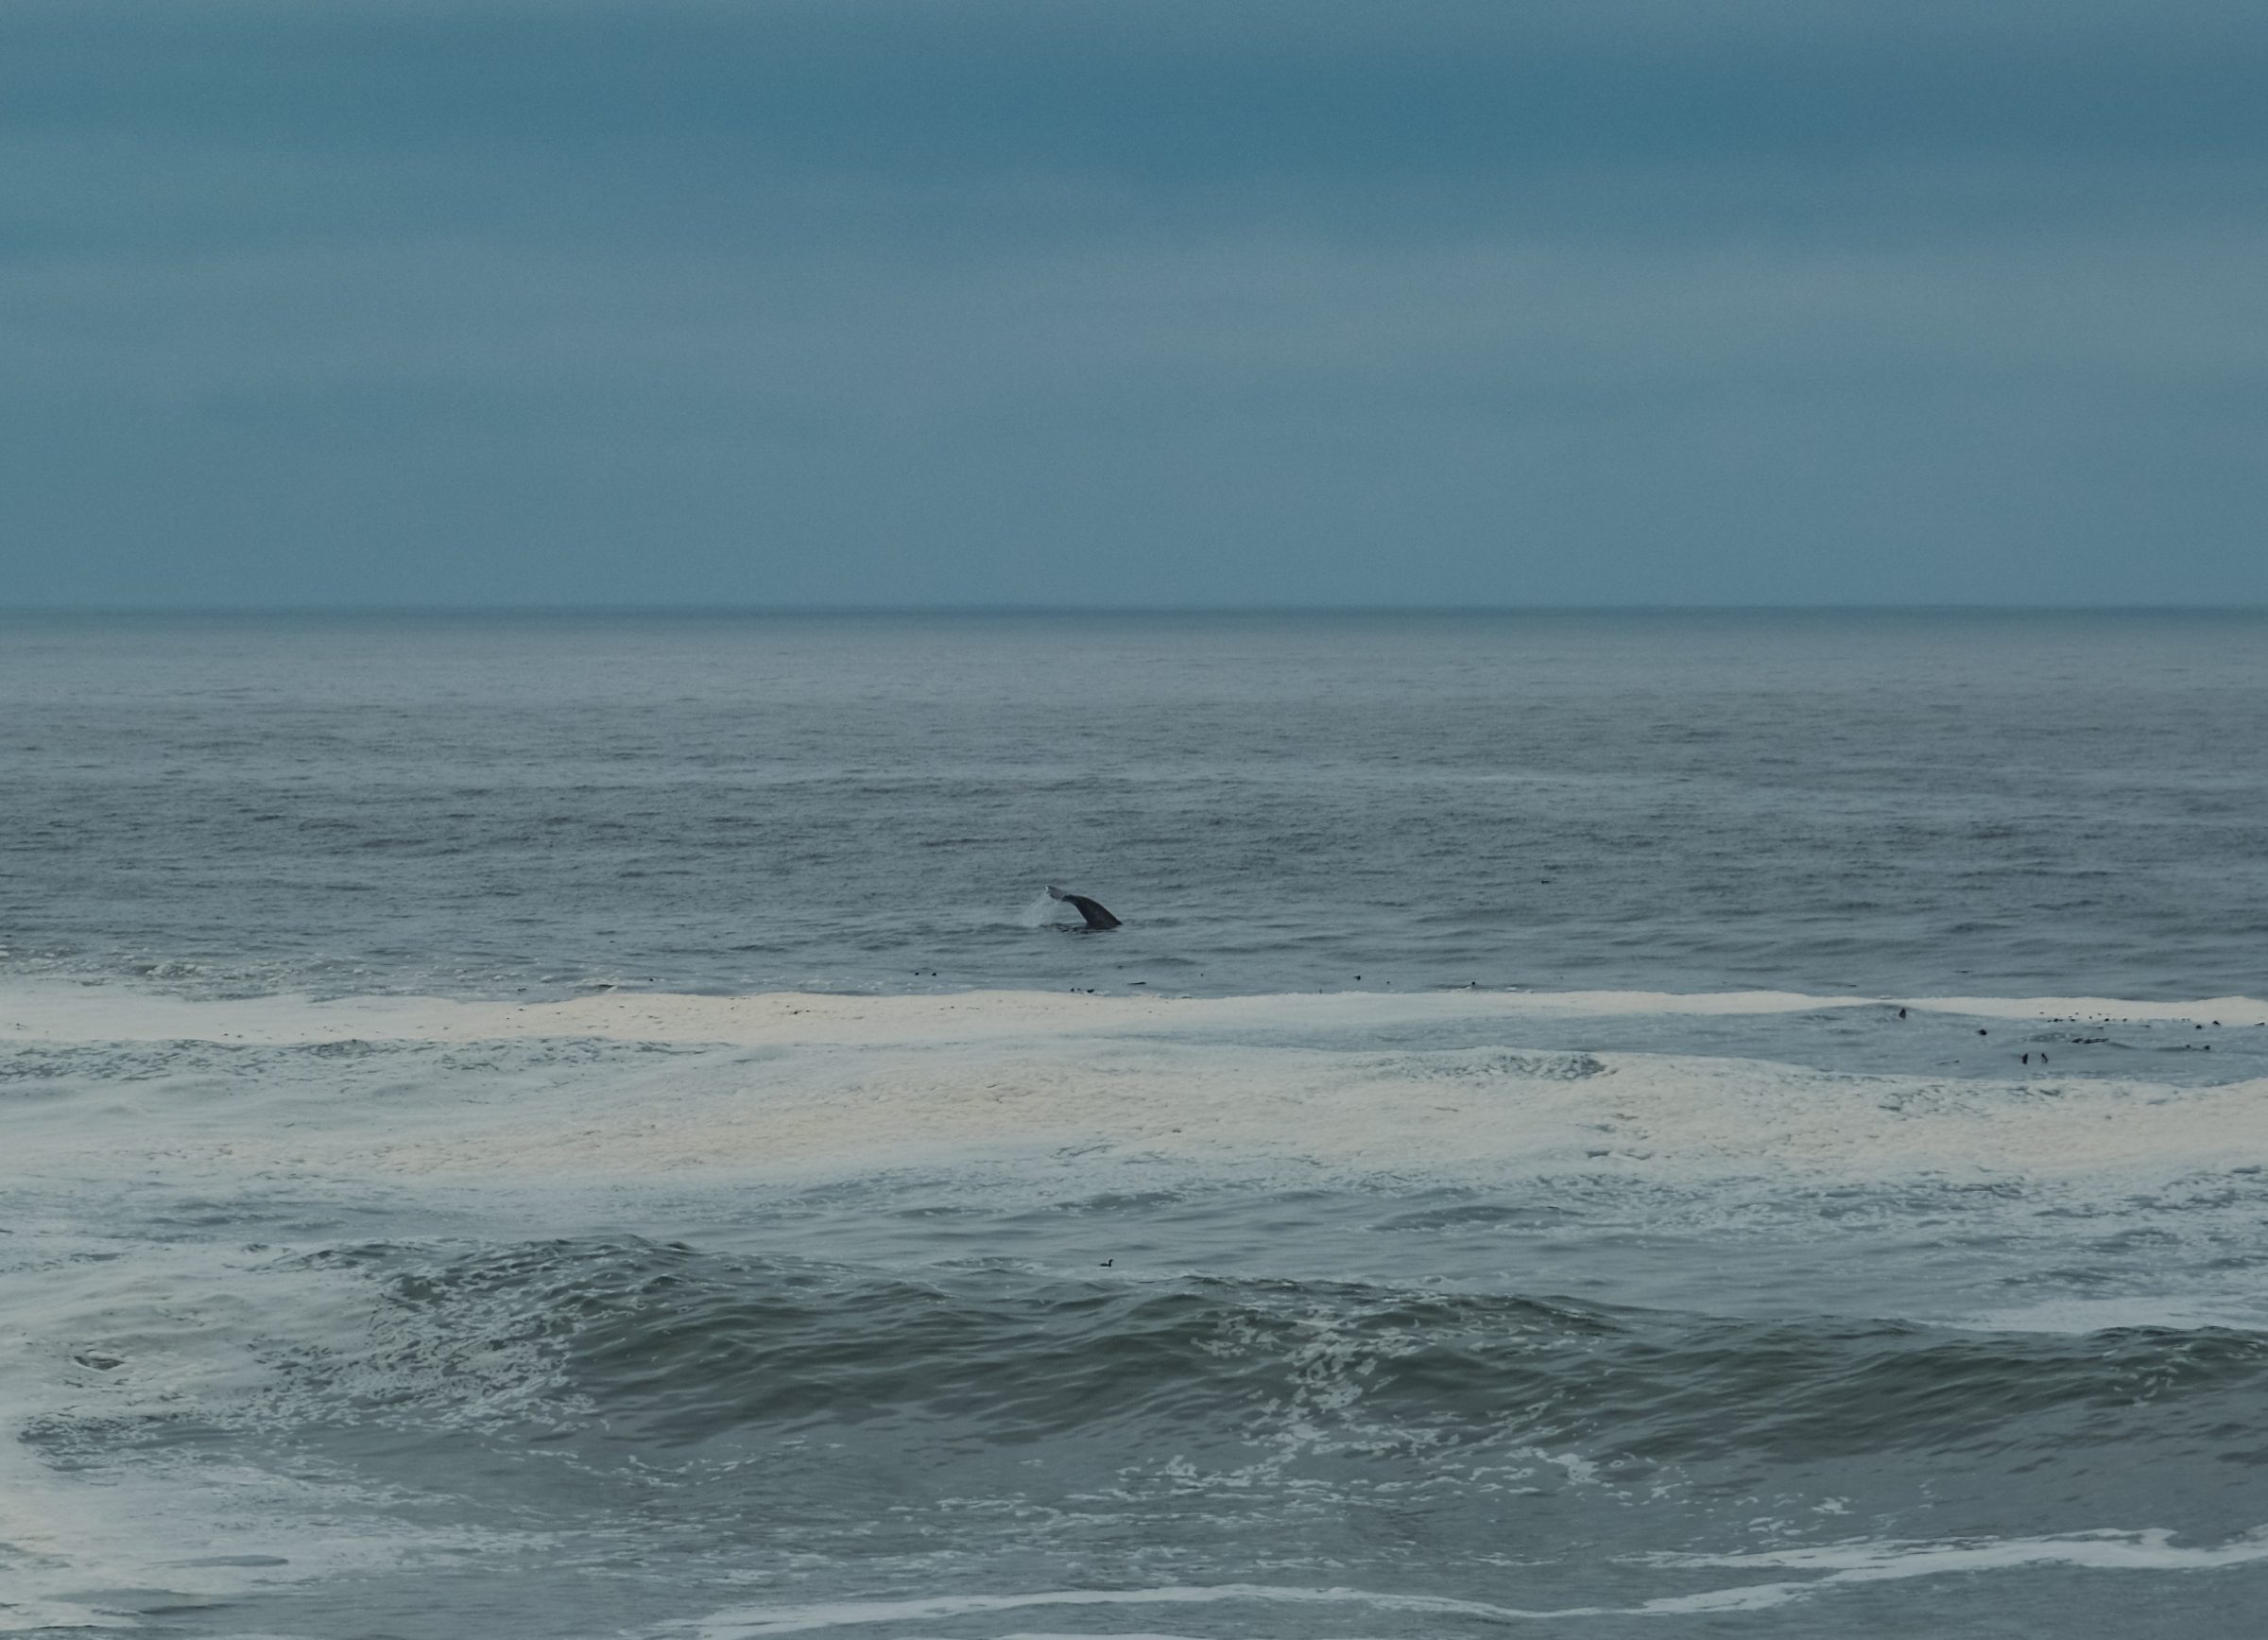 Rep kita u državi Washington na zapadnoj obali Amerike